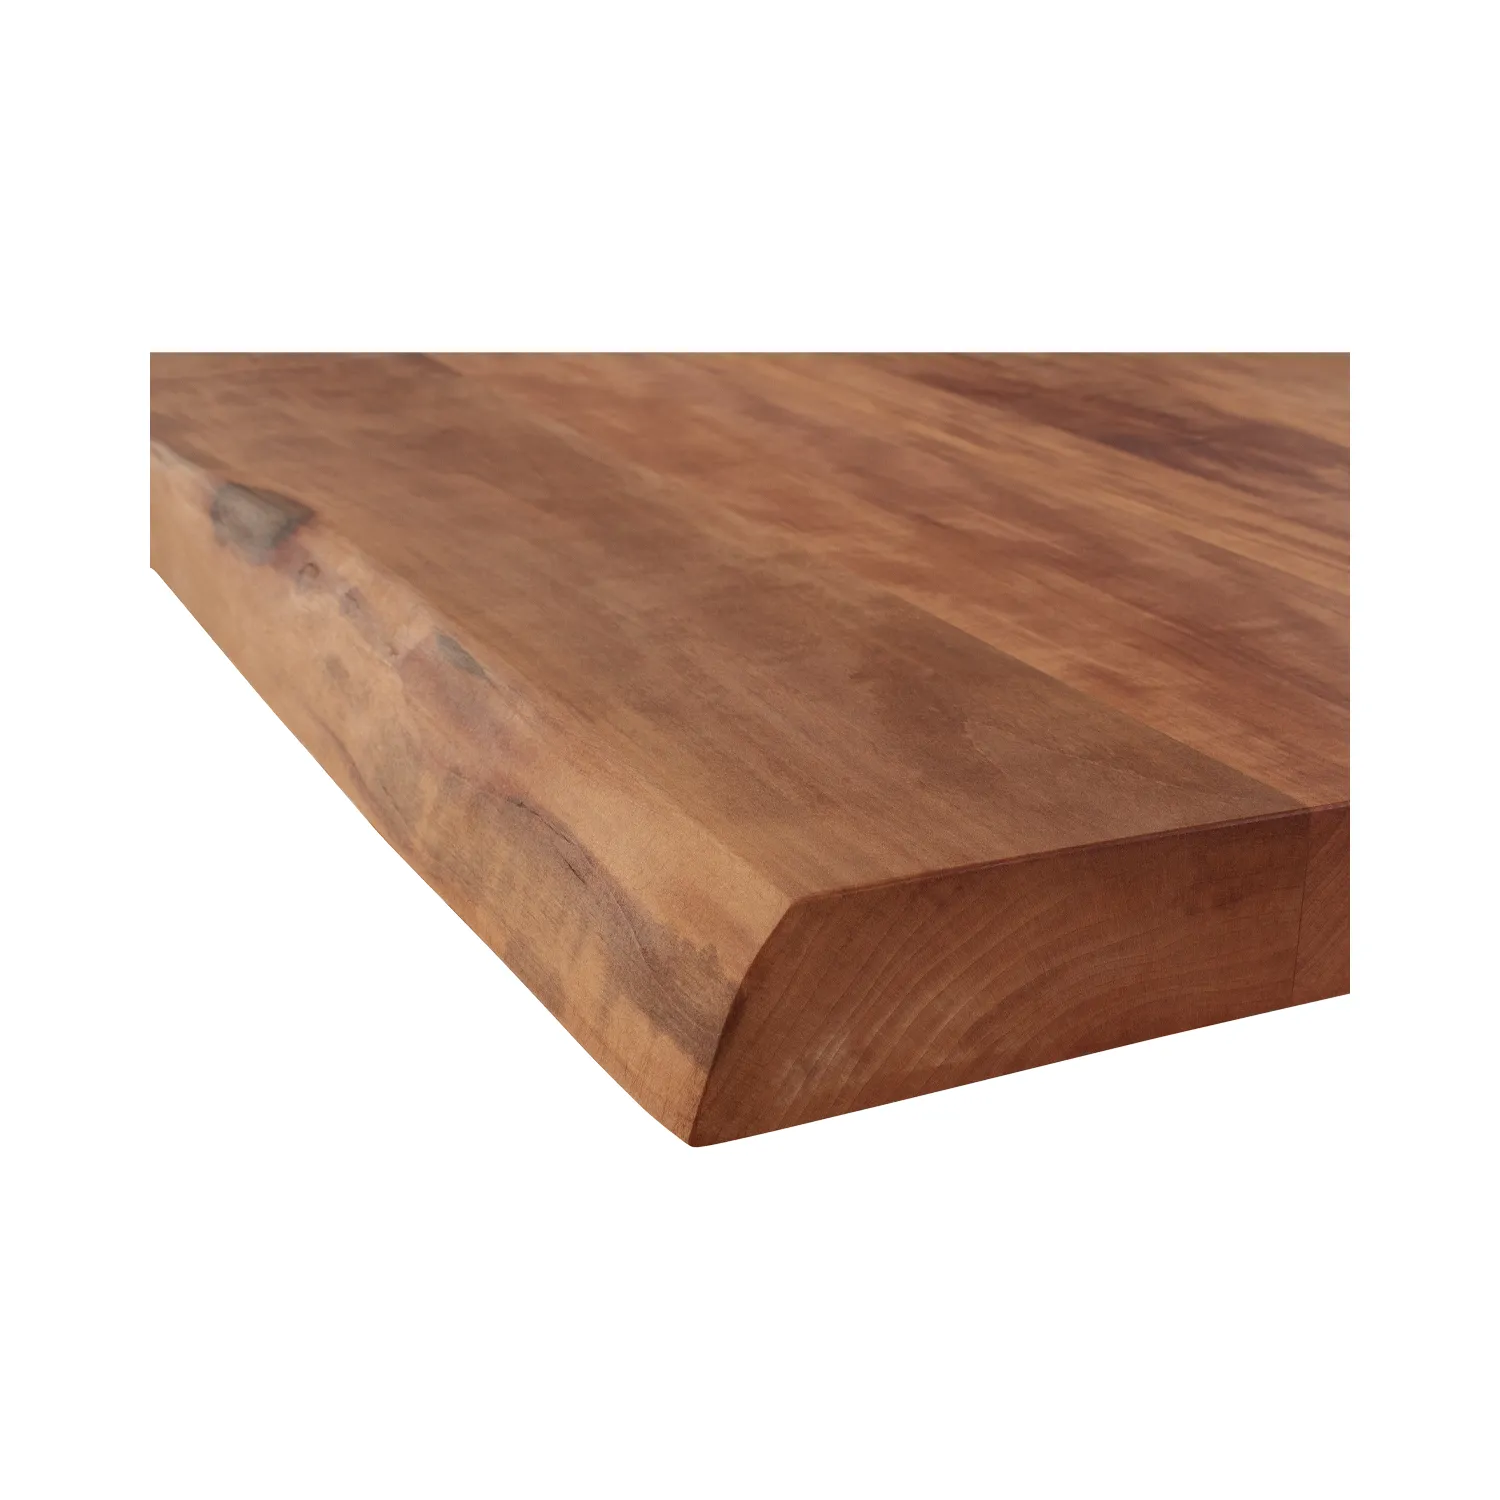 Detailansicht der Tischkante vom Esstisch aus Apfelbaum mit Baumkante